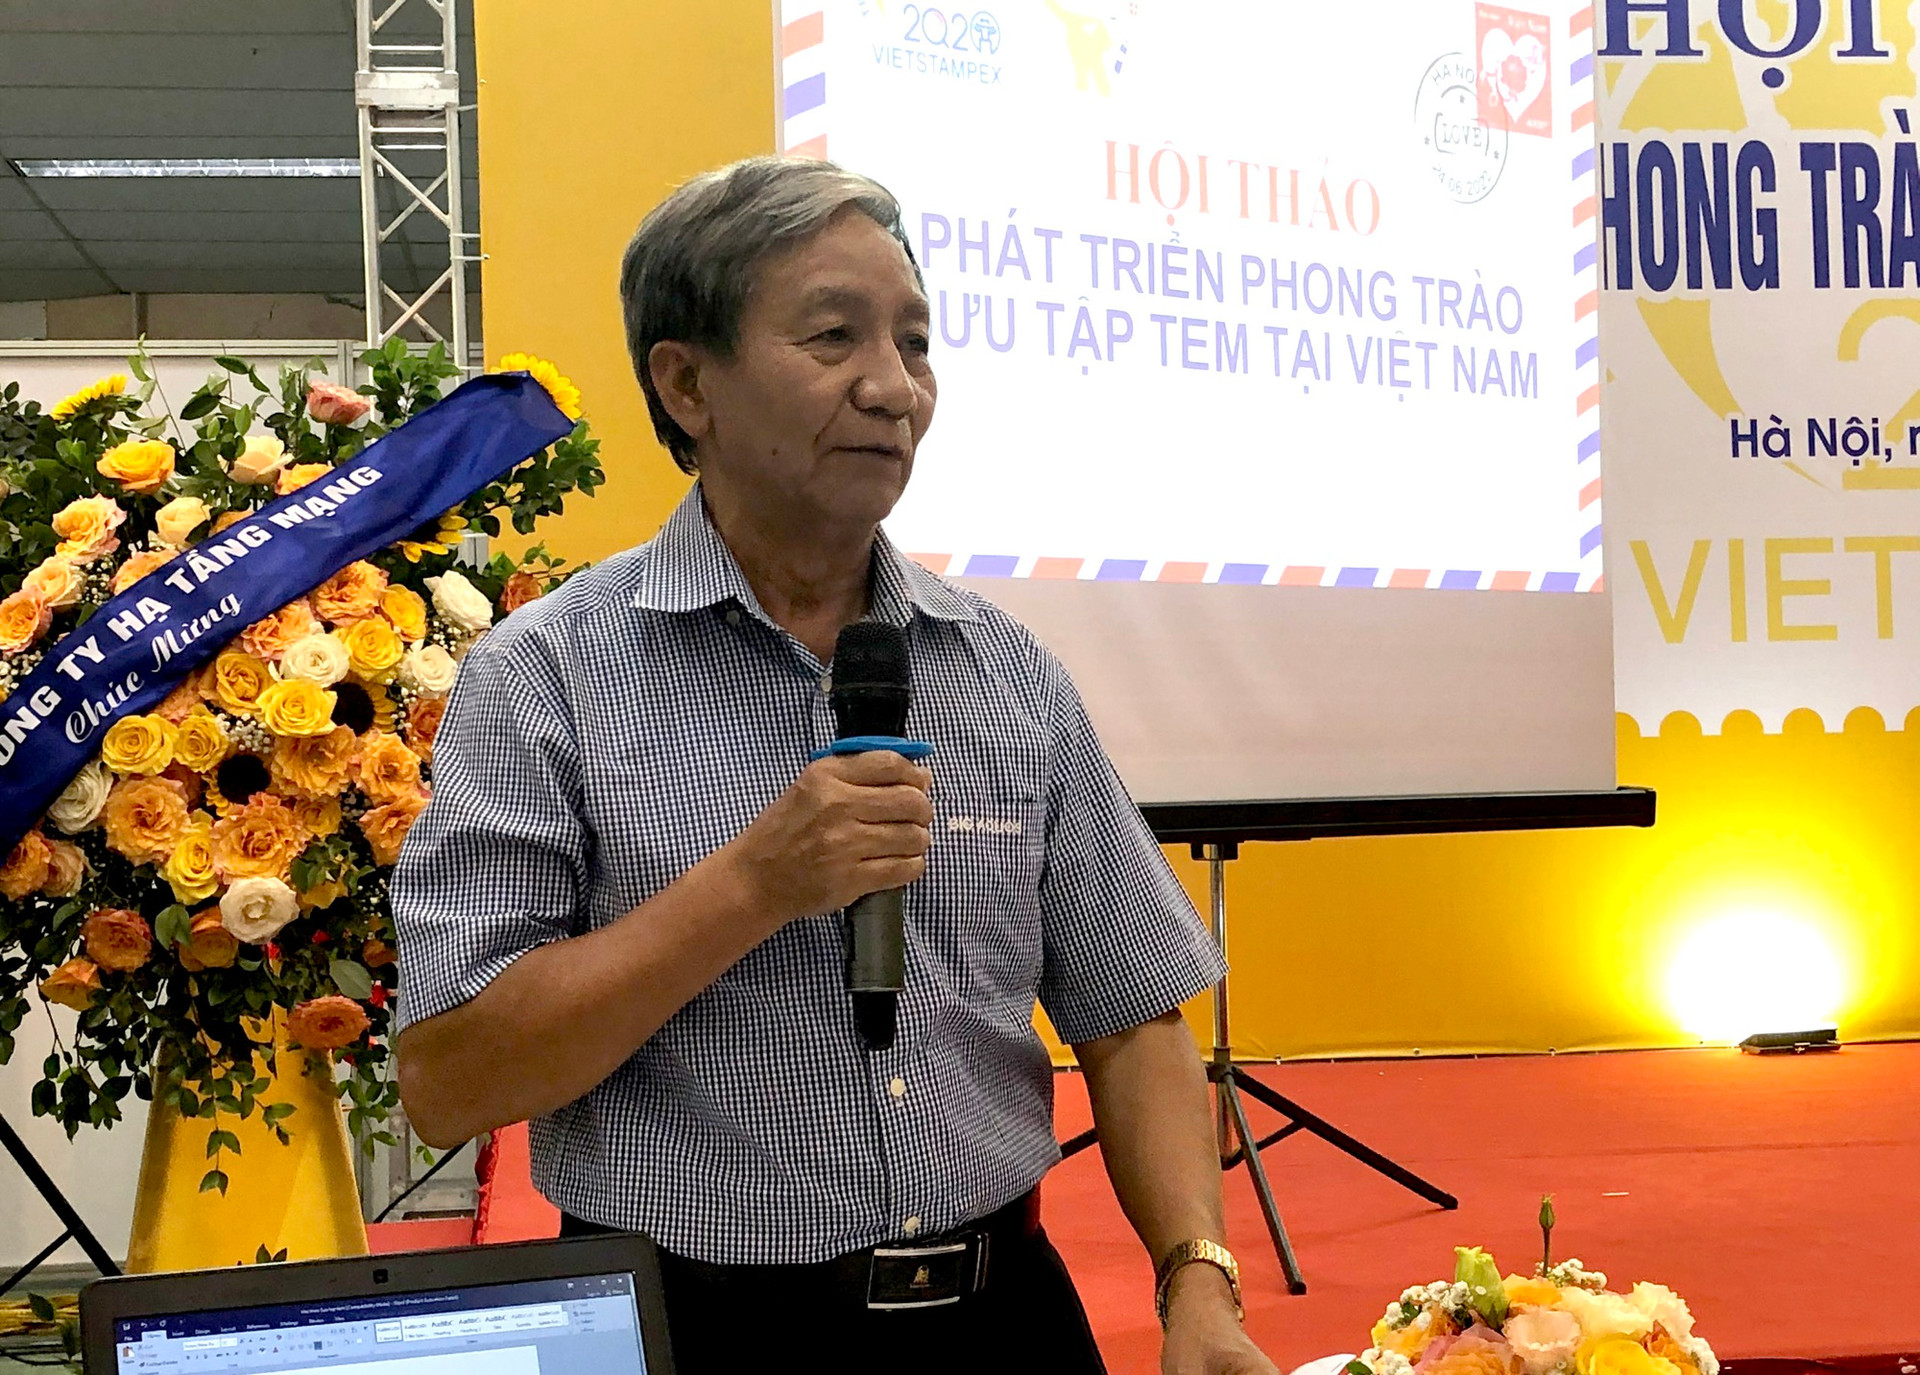 Đề xuất nhiều giải pháp phát triển phong trào sưu tập tem Việt Nam - Ảnh 1.